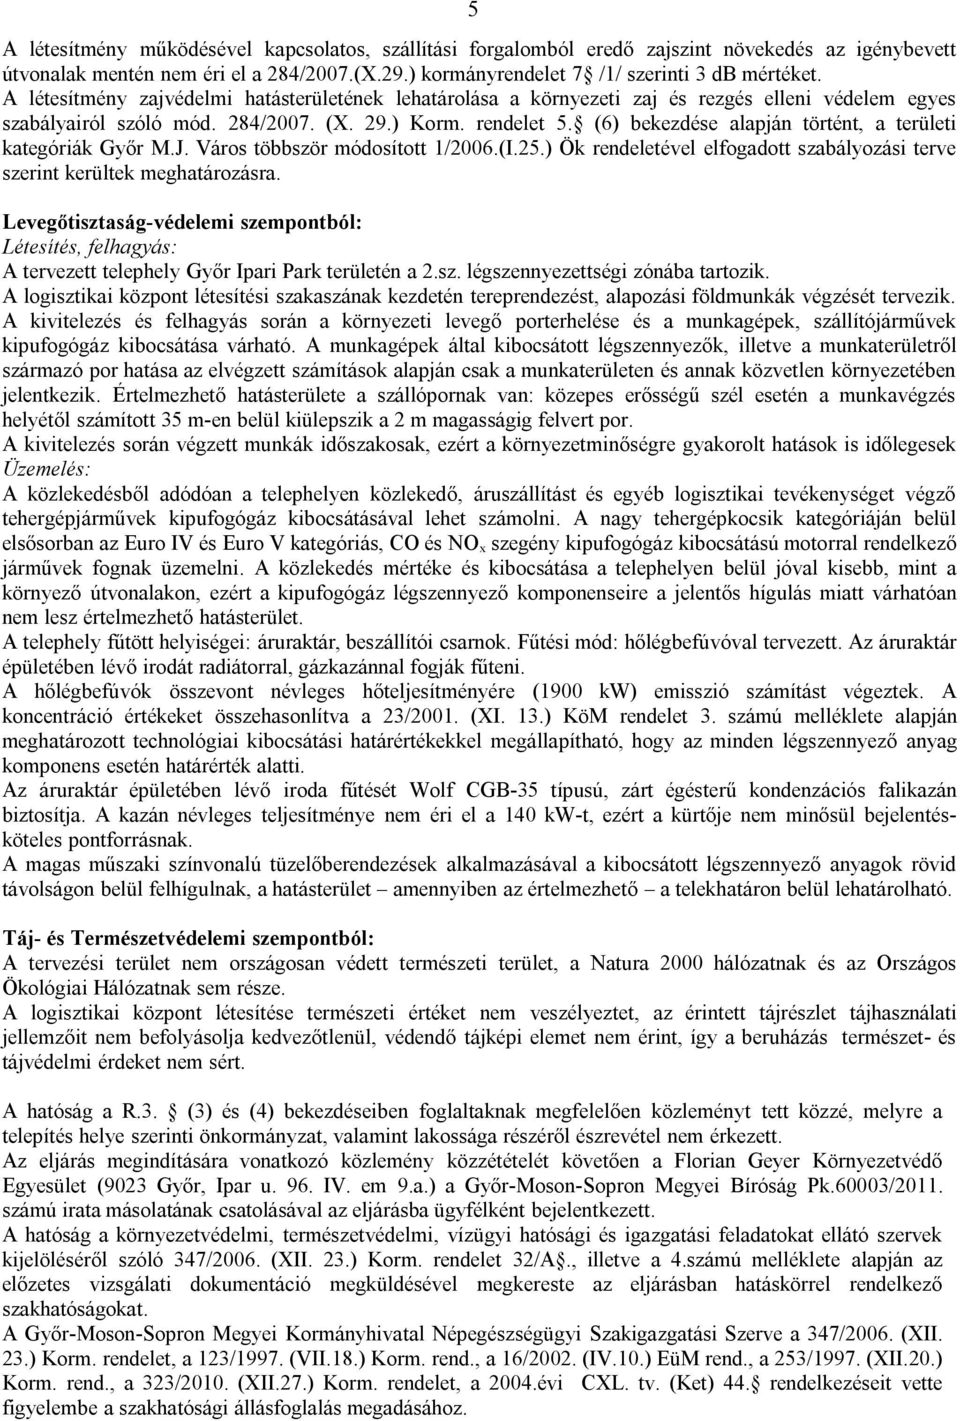 (6) bekezdése alapján történt, a területi kategóriák Győr M.J. Város többször módosított 1/2006.(I.25.) Ök rendeletével elfogadott szabályozási terve szerint kerültek meghatározásra.